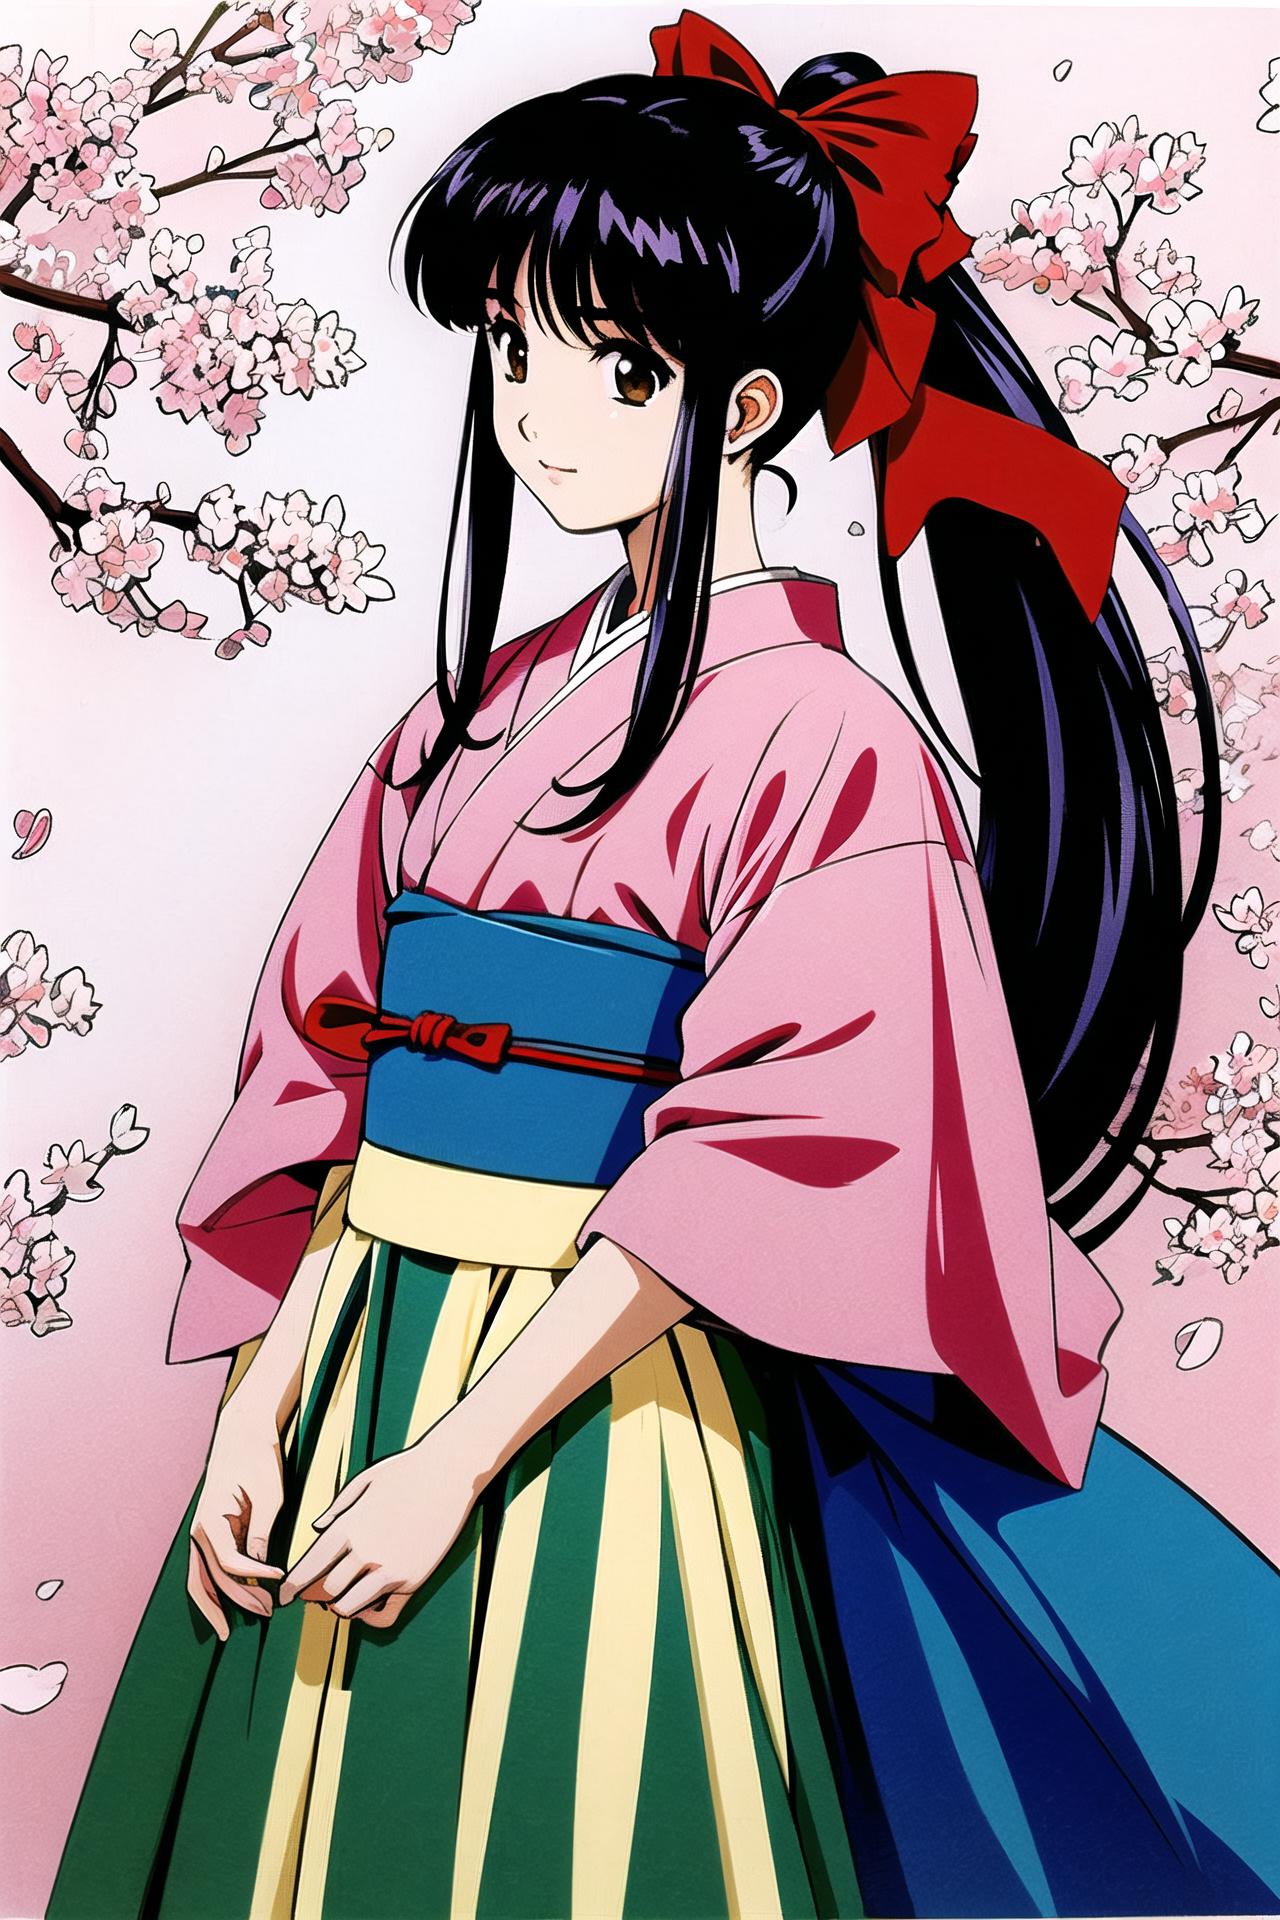 Sakura Wars/Sakura Taisen (樱花大战) (Matsubara Hidenori/松原秀典)(Kousuke Fujishima/藤岛康介) - Artist Style image by flyx3